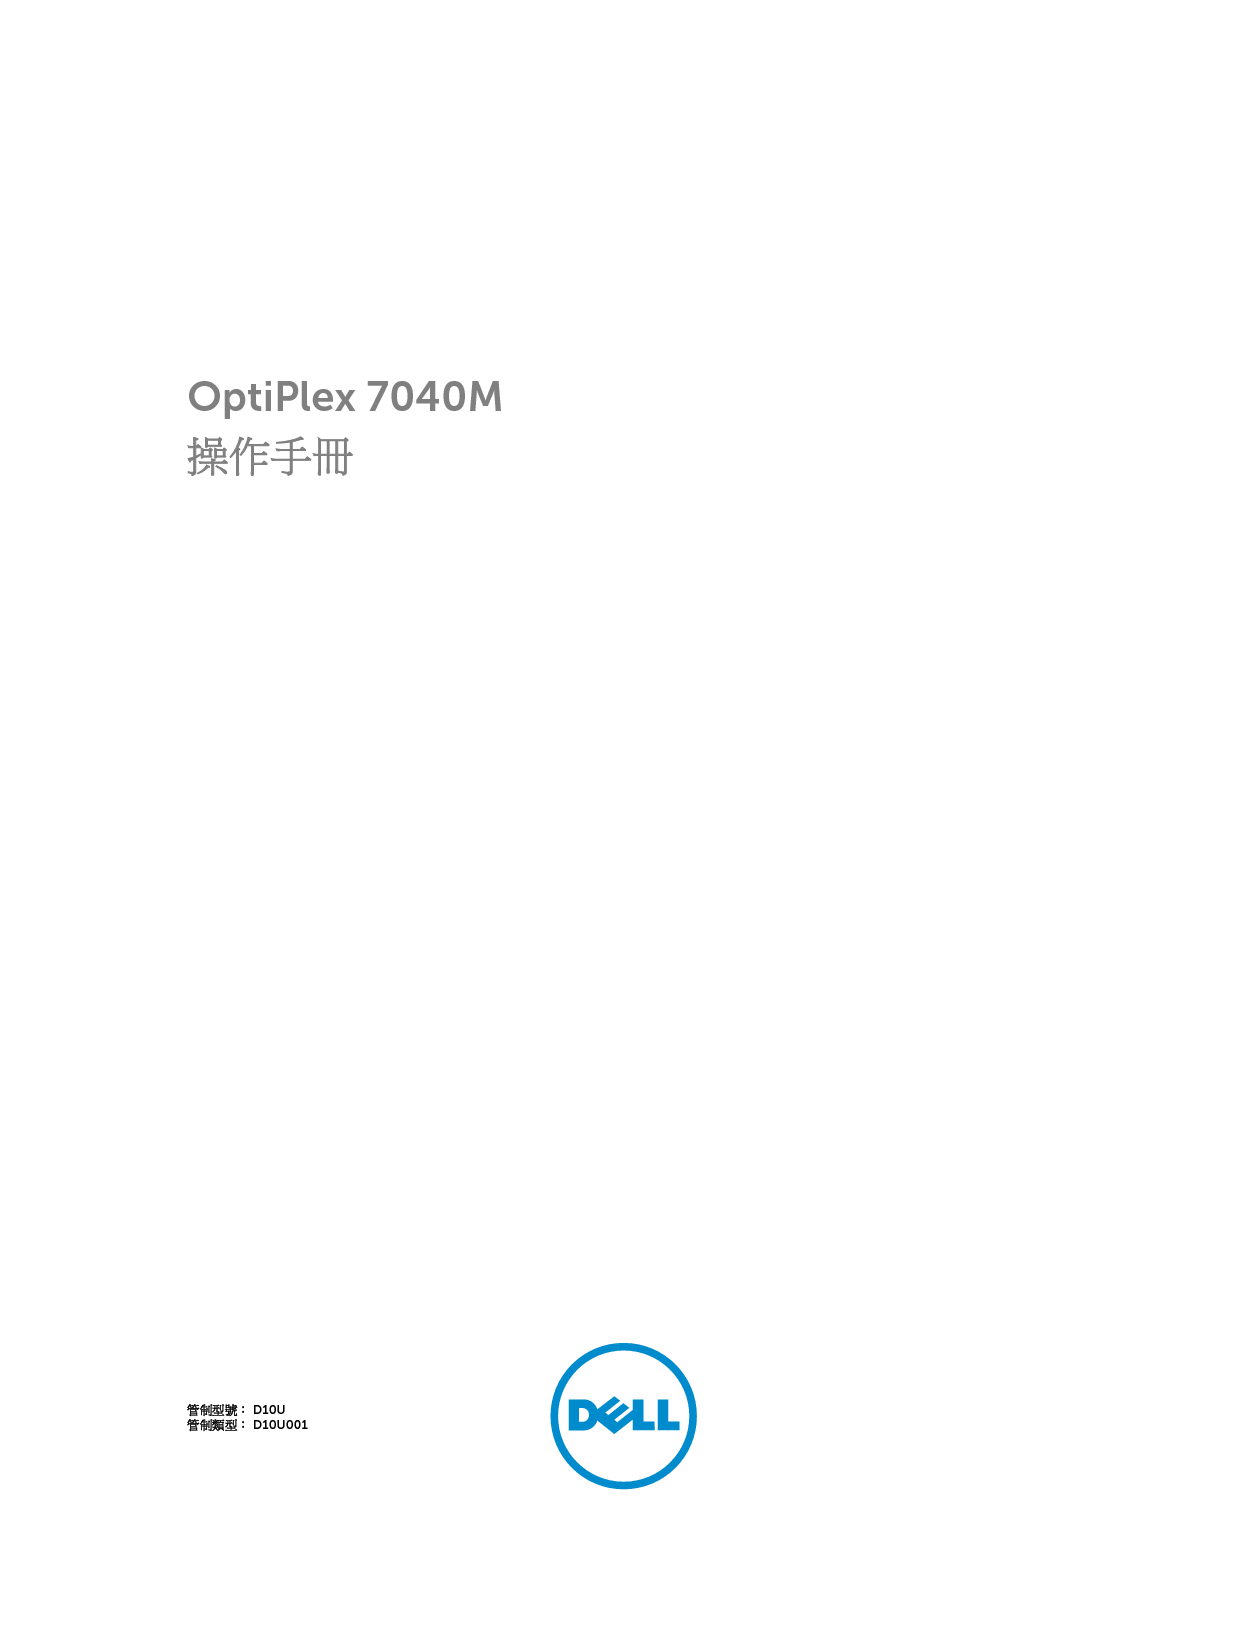 戴尔 Dell Optiplex 7040M 繁体 用户手册 封面